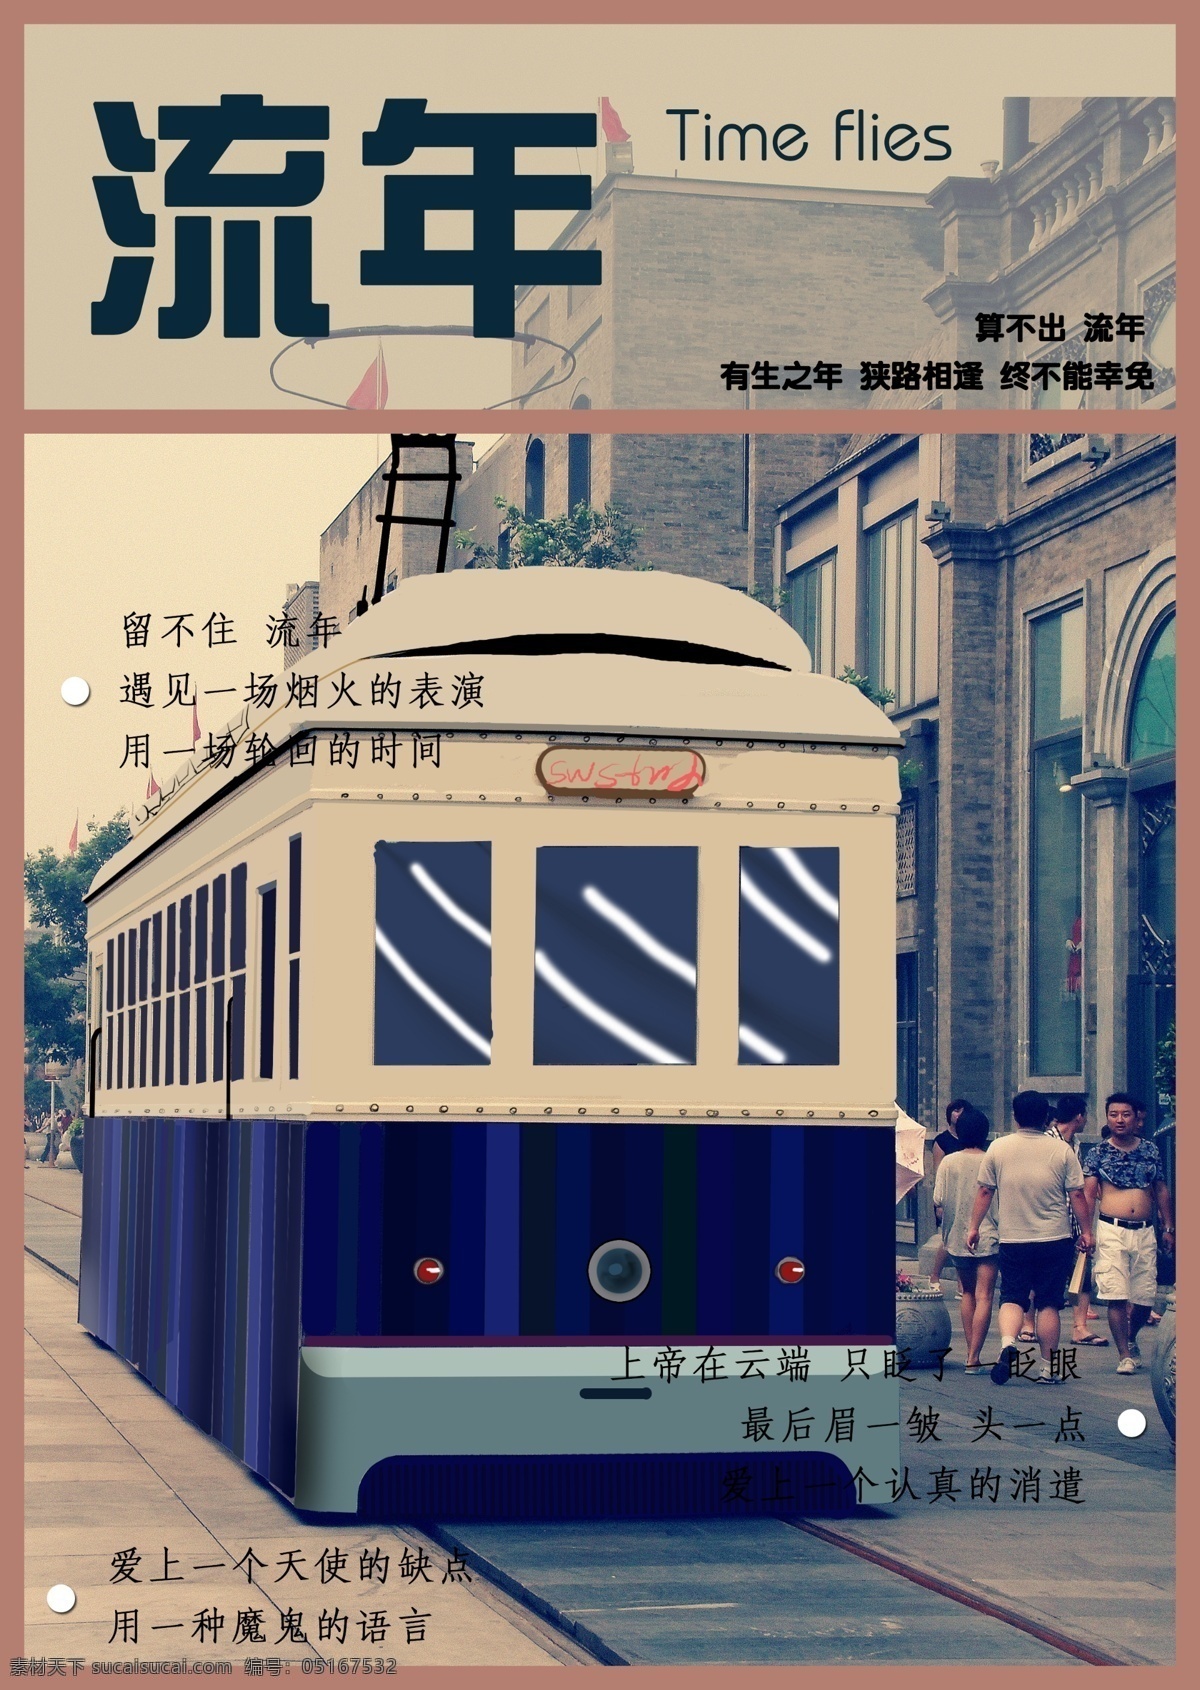 流年封面 流年 书籍 封面 排版 手绘 电车 老上海 字体 画册设计